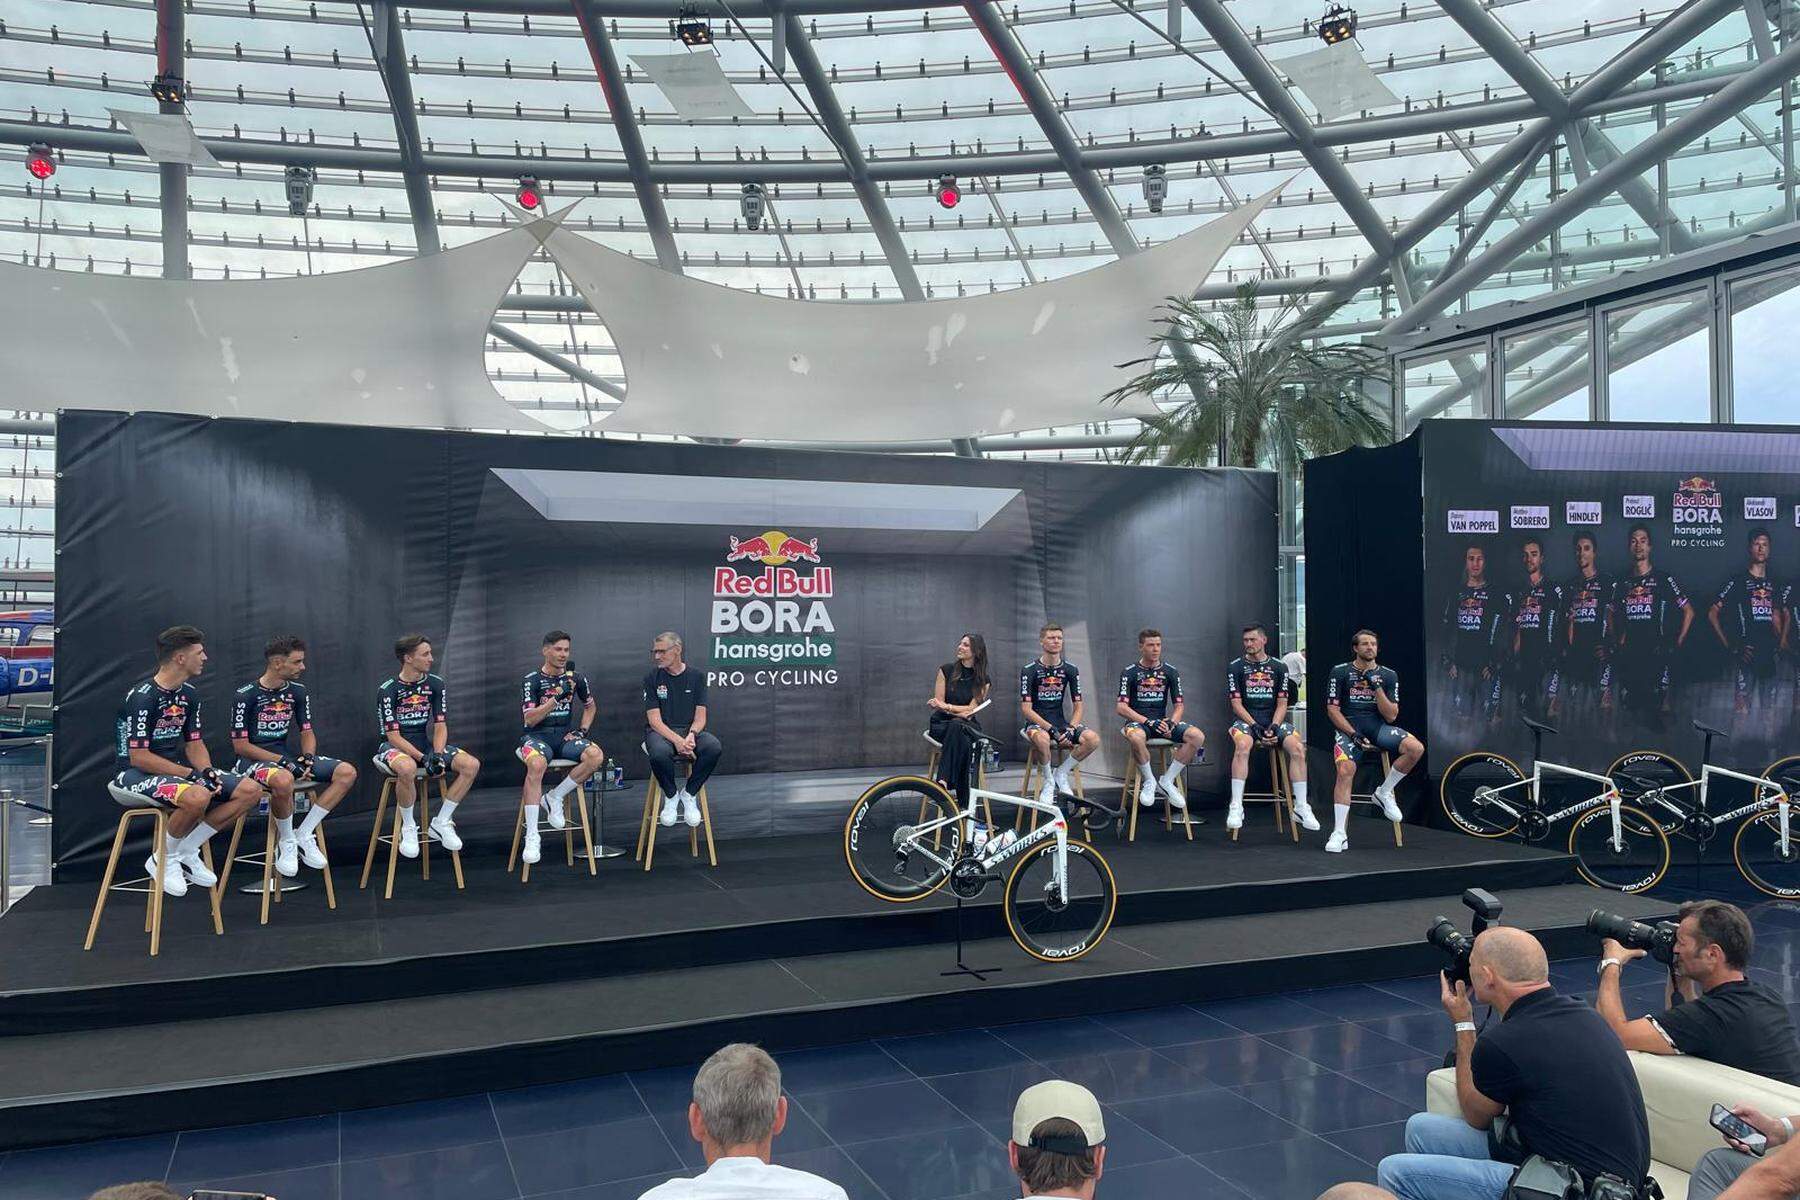 Marco Haller bei der Tour: So steigt Red Bull vor der Tour de France in den Radsport ein